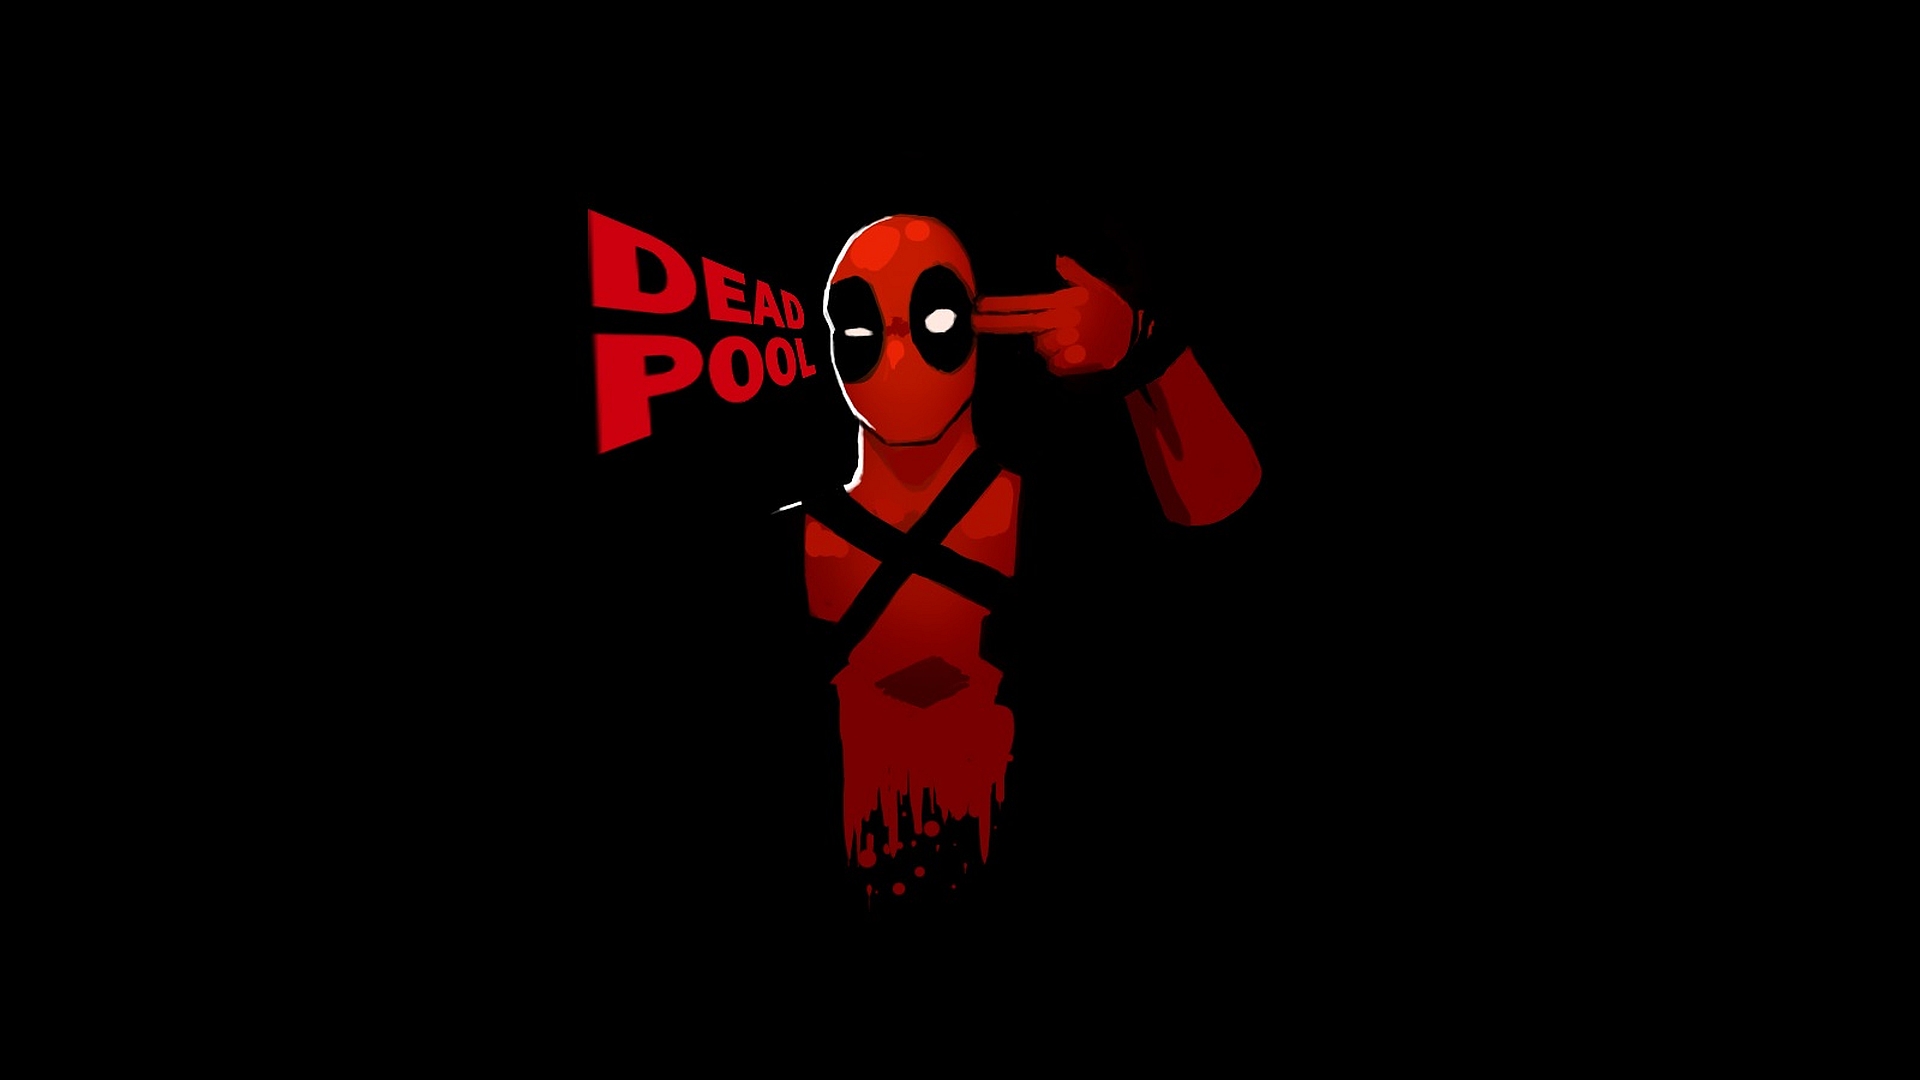 Deadpool wallpaper HD free download